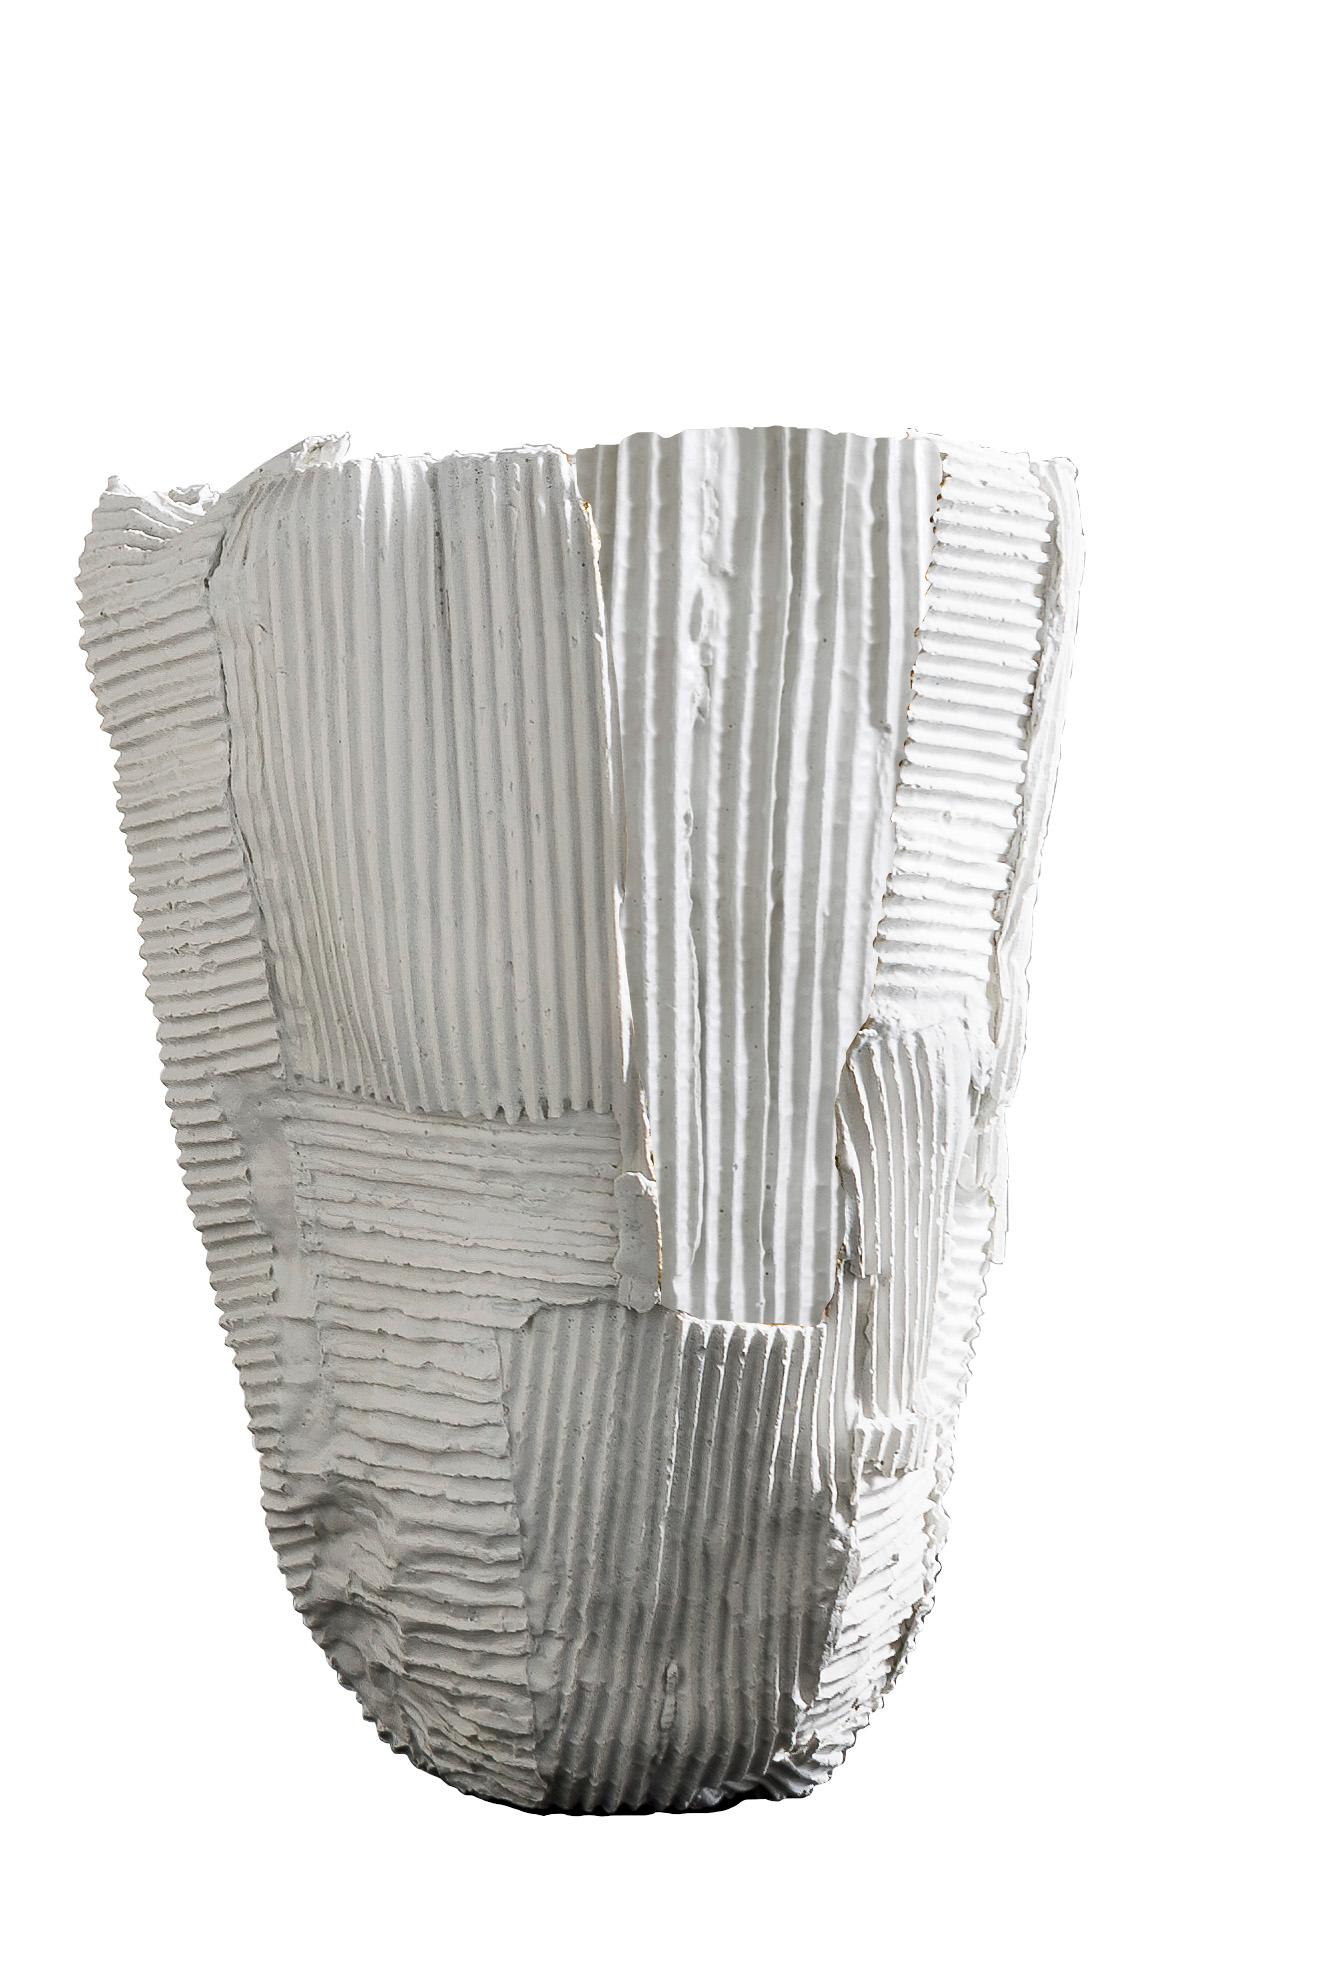 Diese hohe Vase strahlt zeitlosen skulpturalen Reiz und skurrilen Charme aus und ist eine Übung in Balance und visueller Harmonie. Seine hohe Silhouette breitet sich von einer stabilen Basis aus leicht aus und formt eine blumenartige Form. Diese